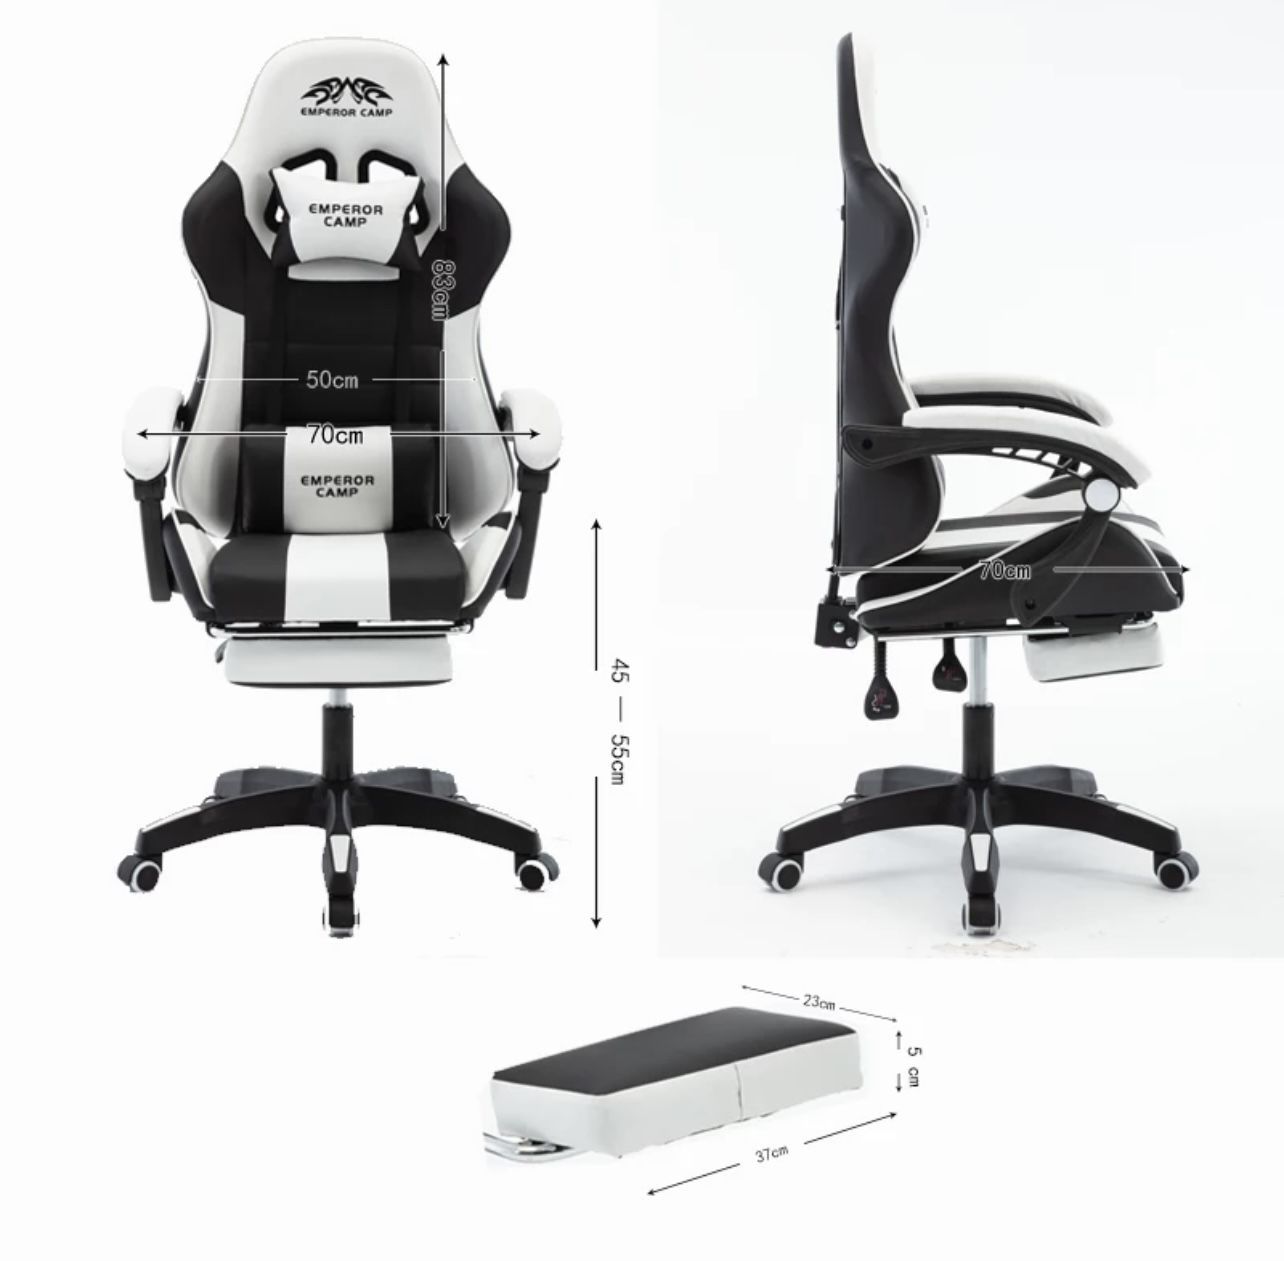 Stmeng 925 кресло для компьютерных игр